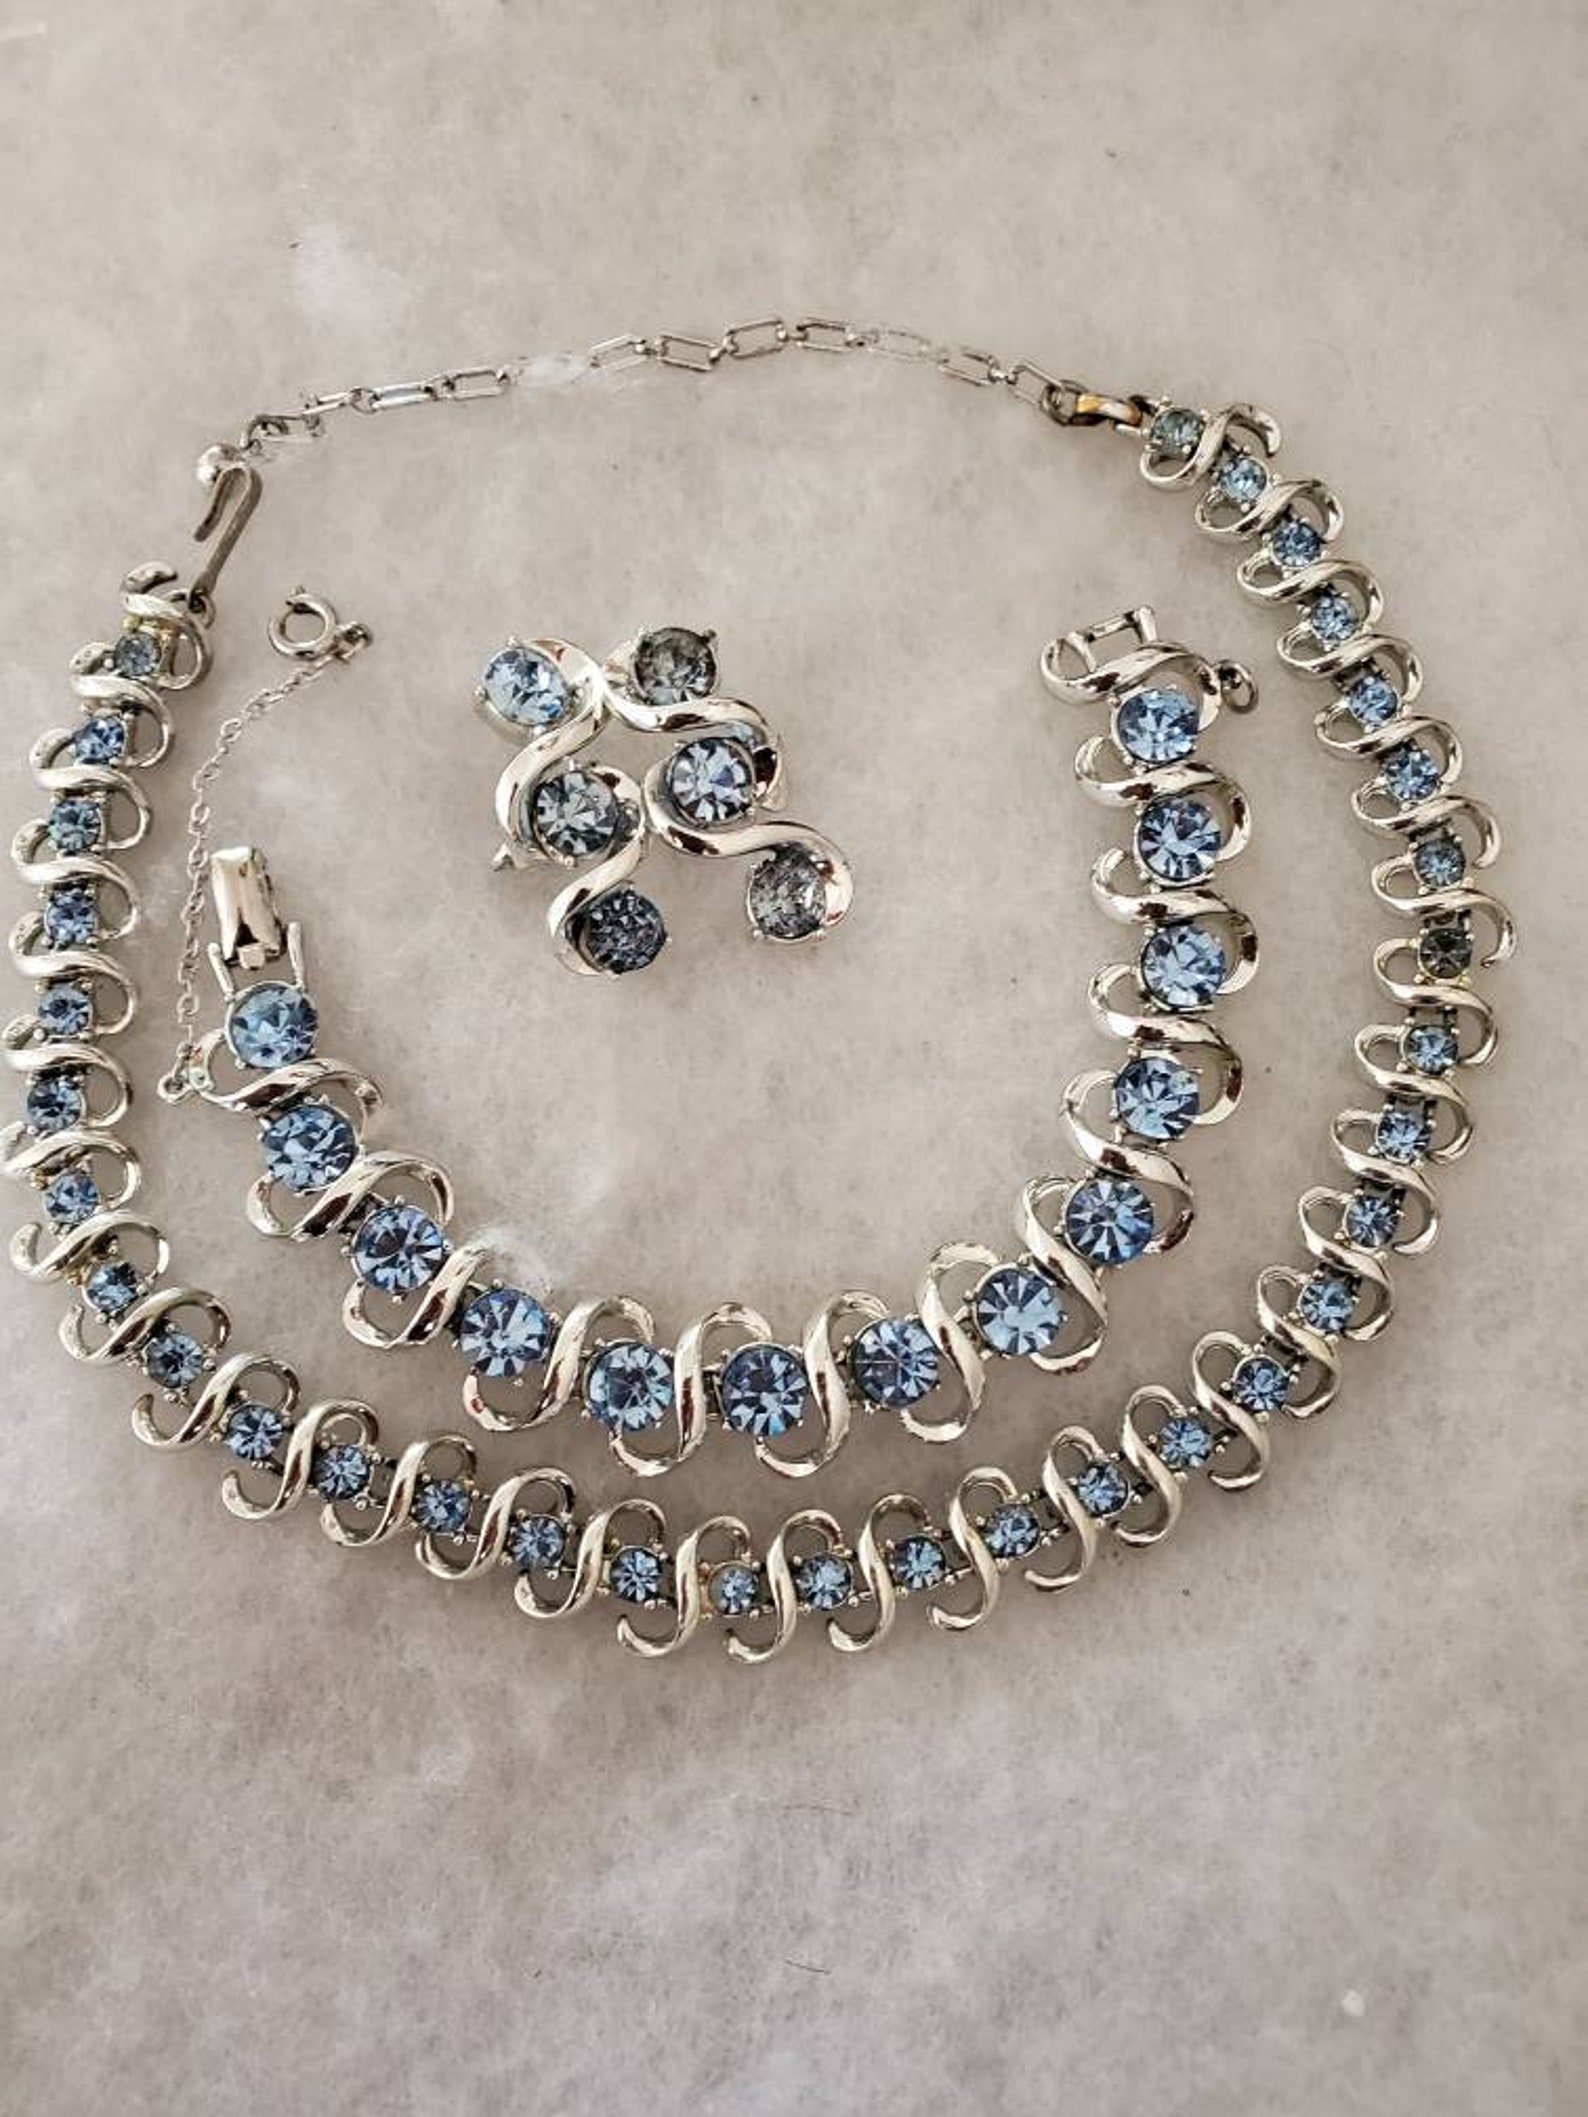 Vintage 1950s Coro Blue Aquamarine Rhinestone Necklace, Bracelet With ...